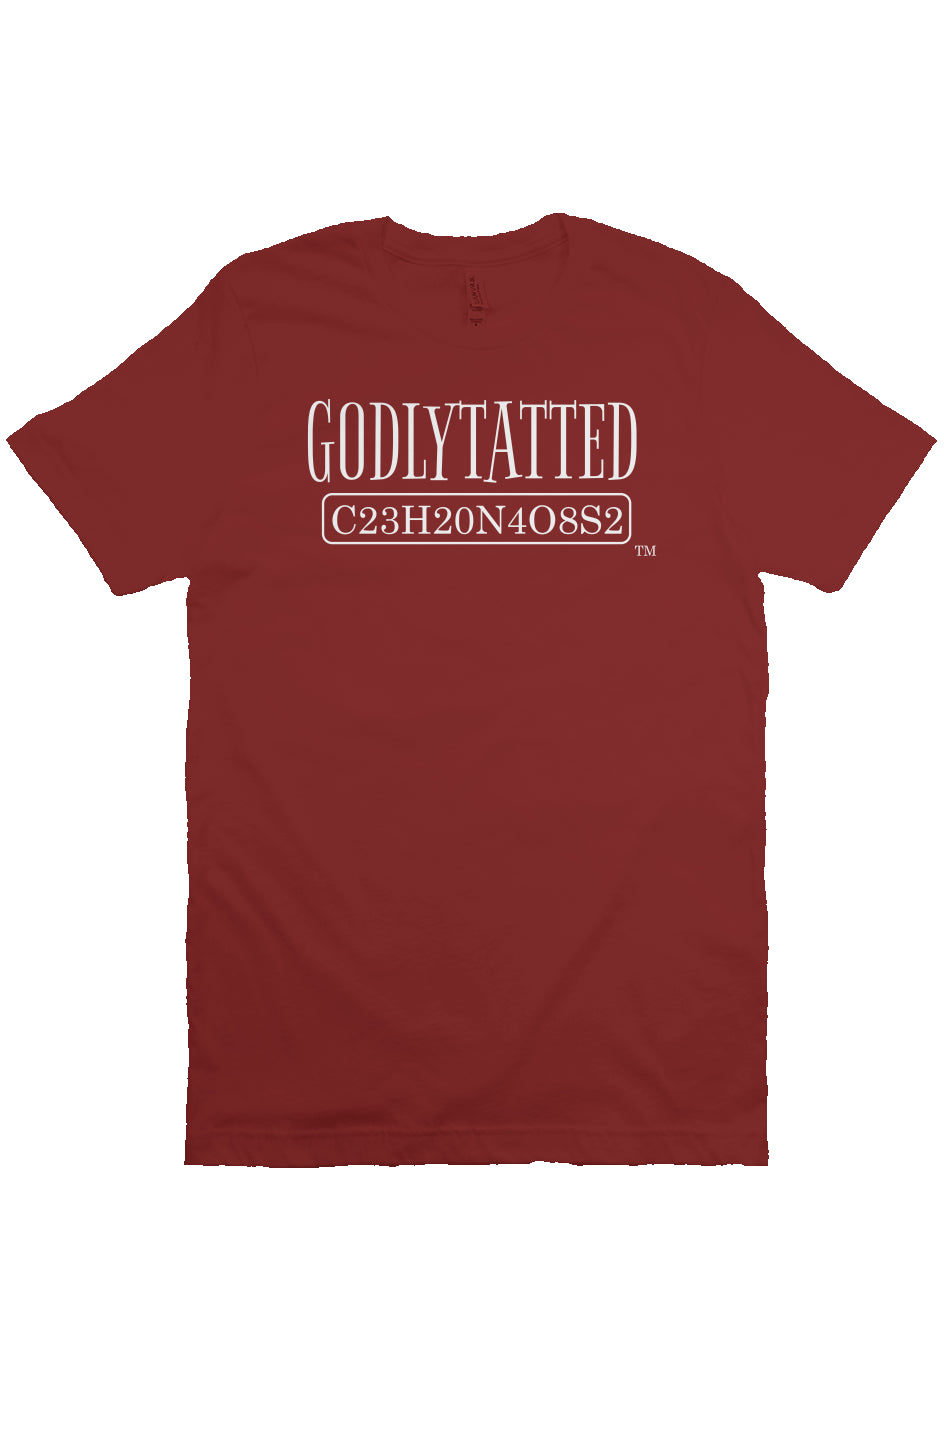 Godlytatted - Adult - Cardinal - White Logo